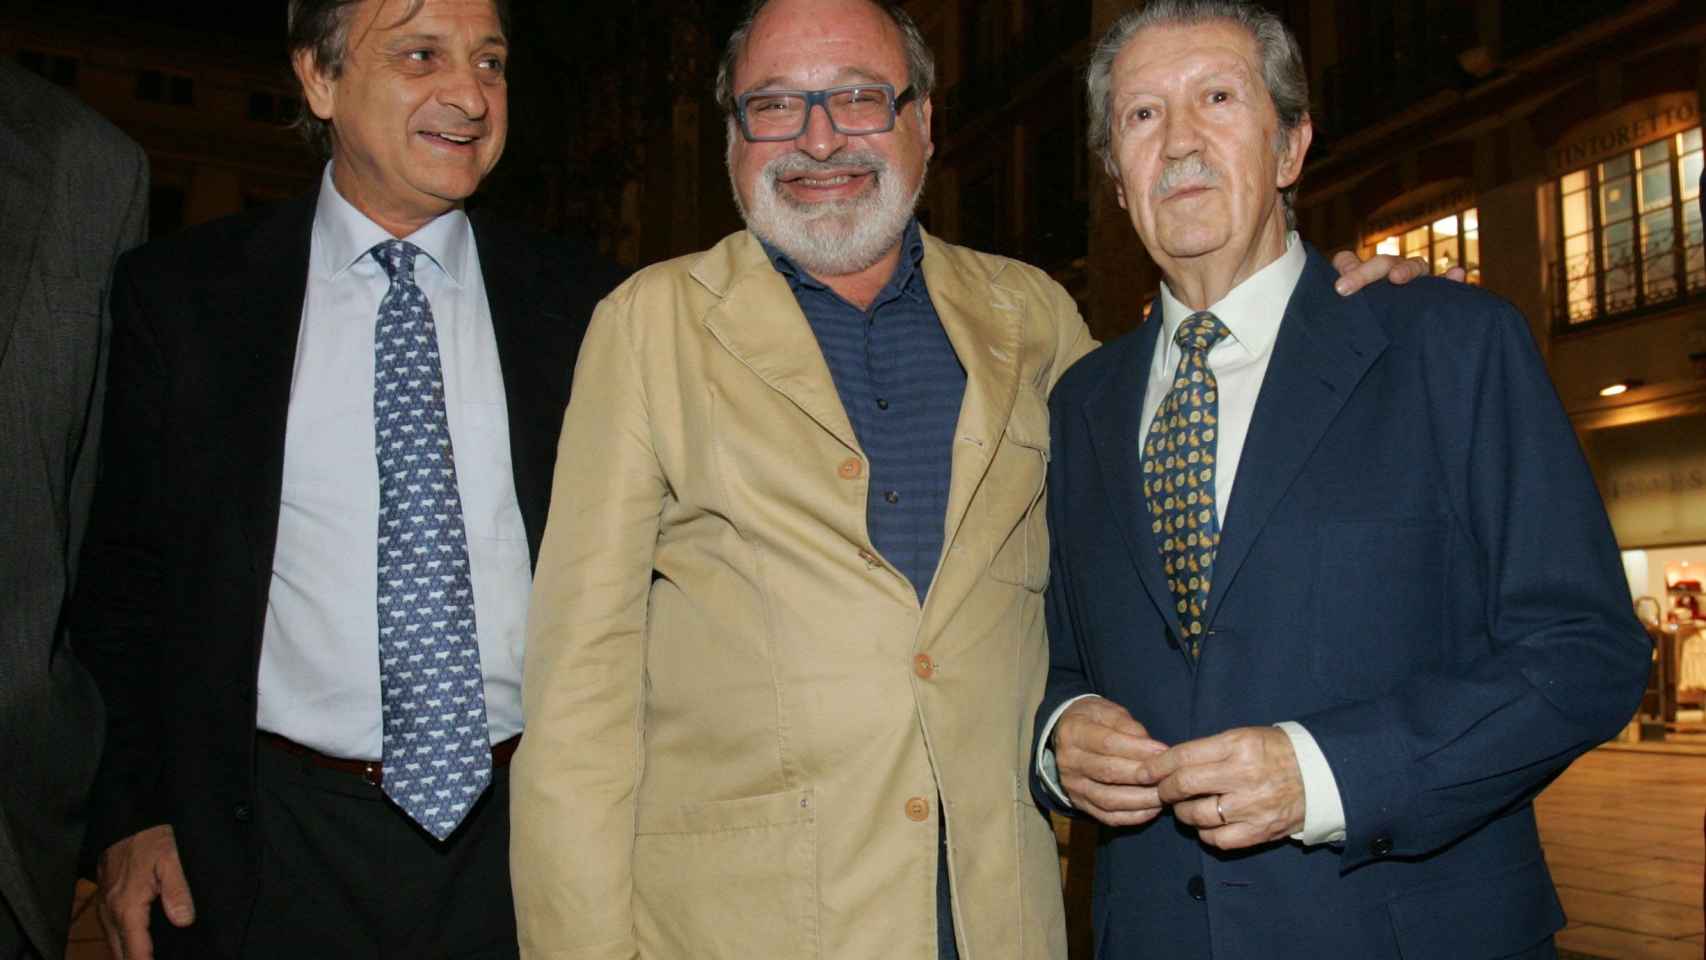 Moreno Peralta, Savater y Alcántara, en una imagen.